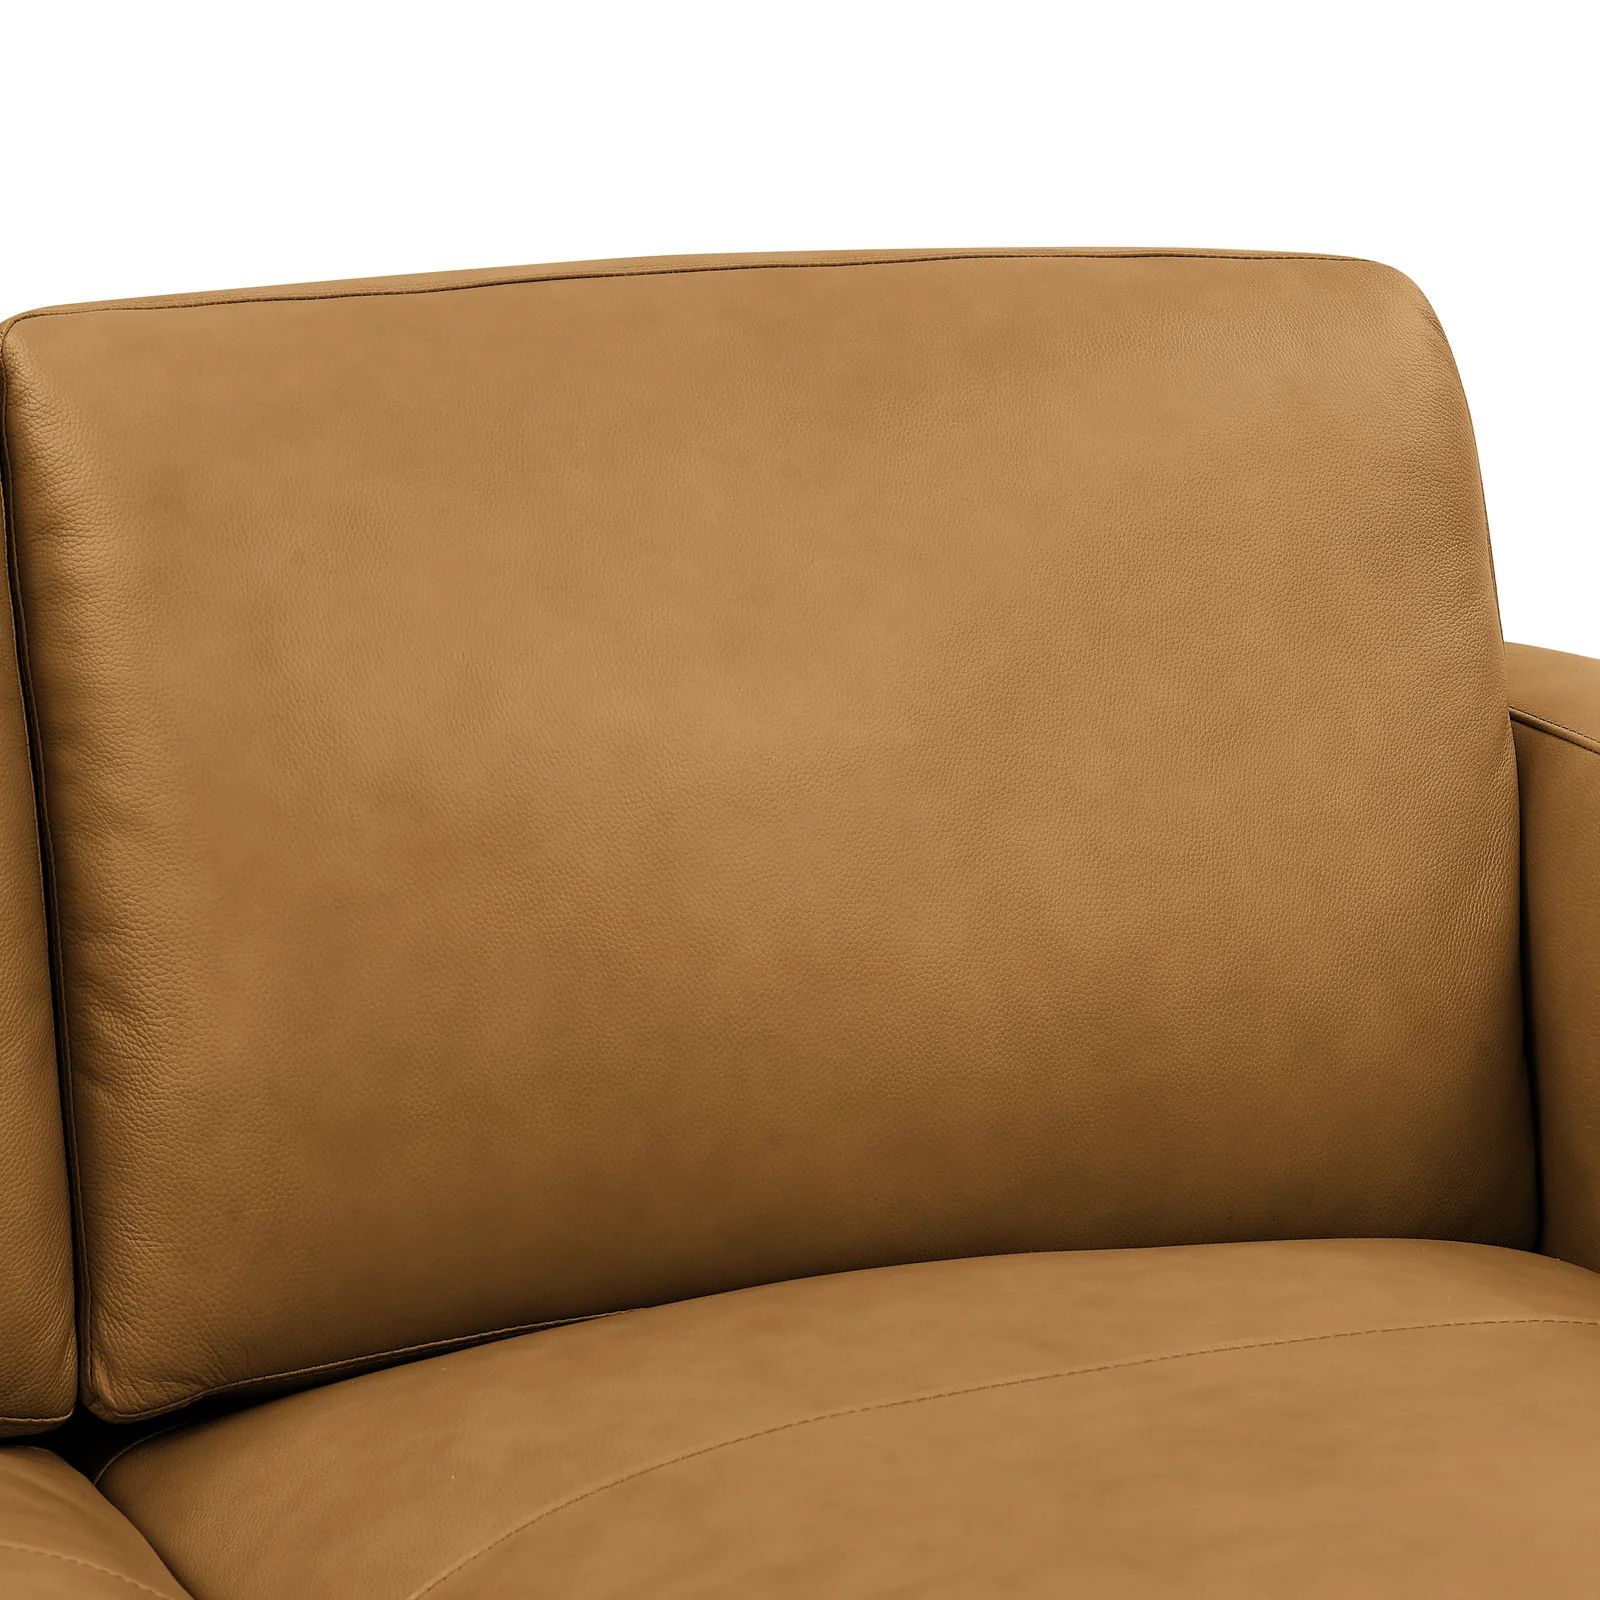  Bộ ghế sofa phòng khách KT35 Kassy da simili màu da bò 